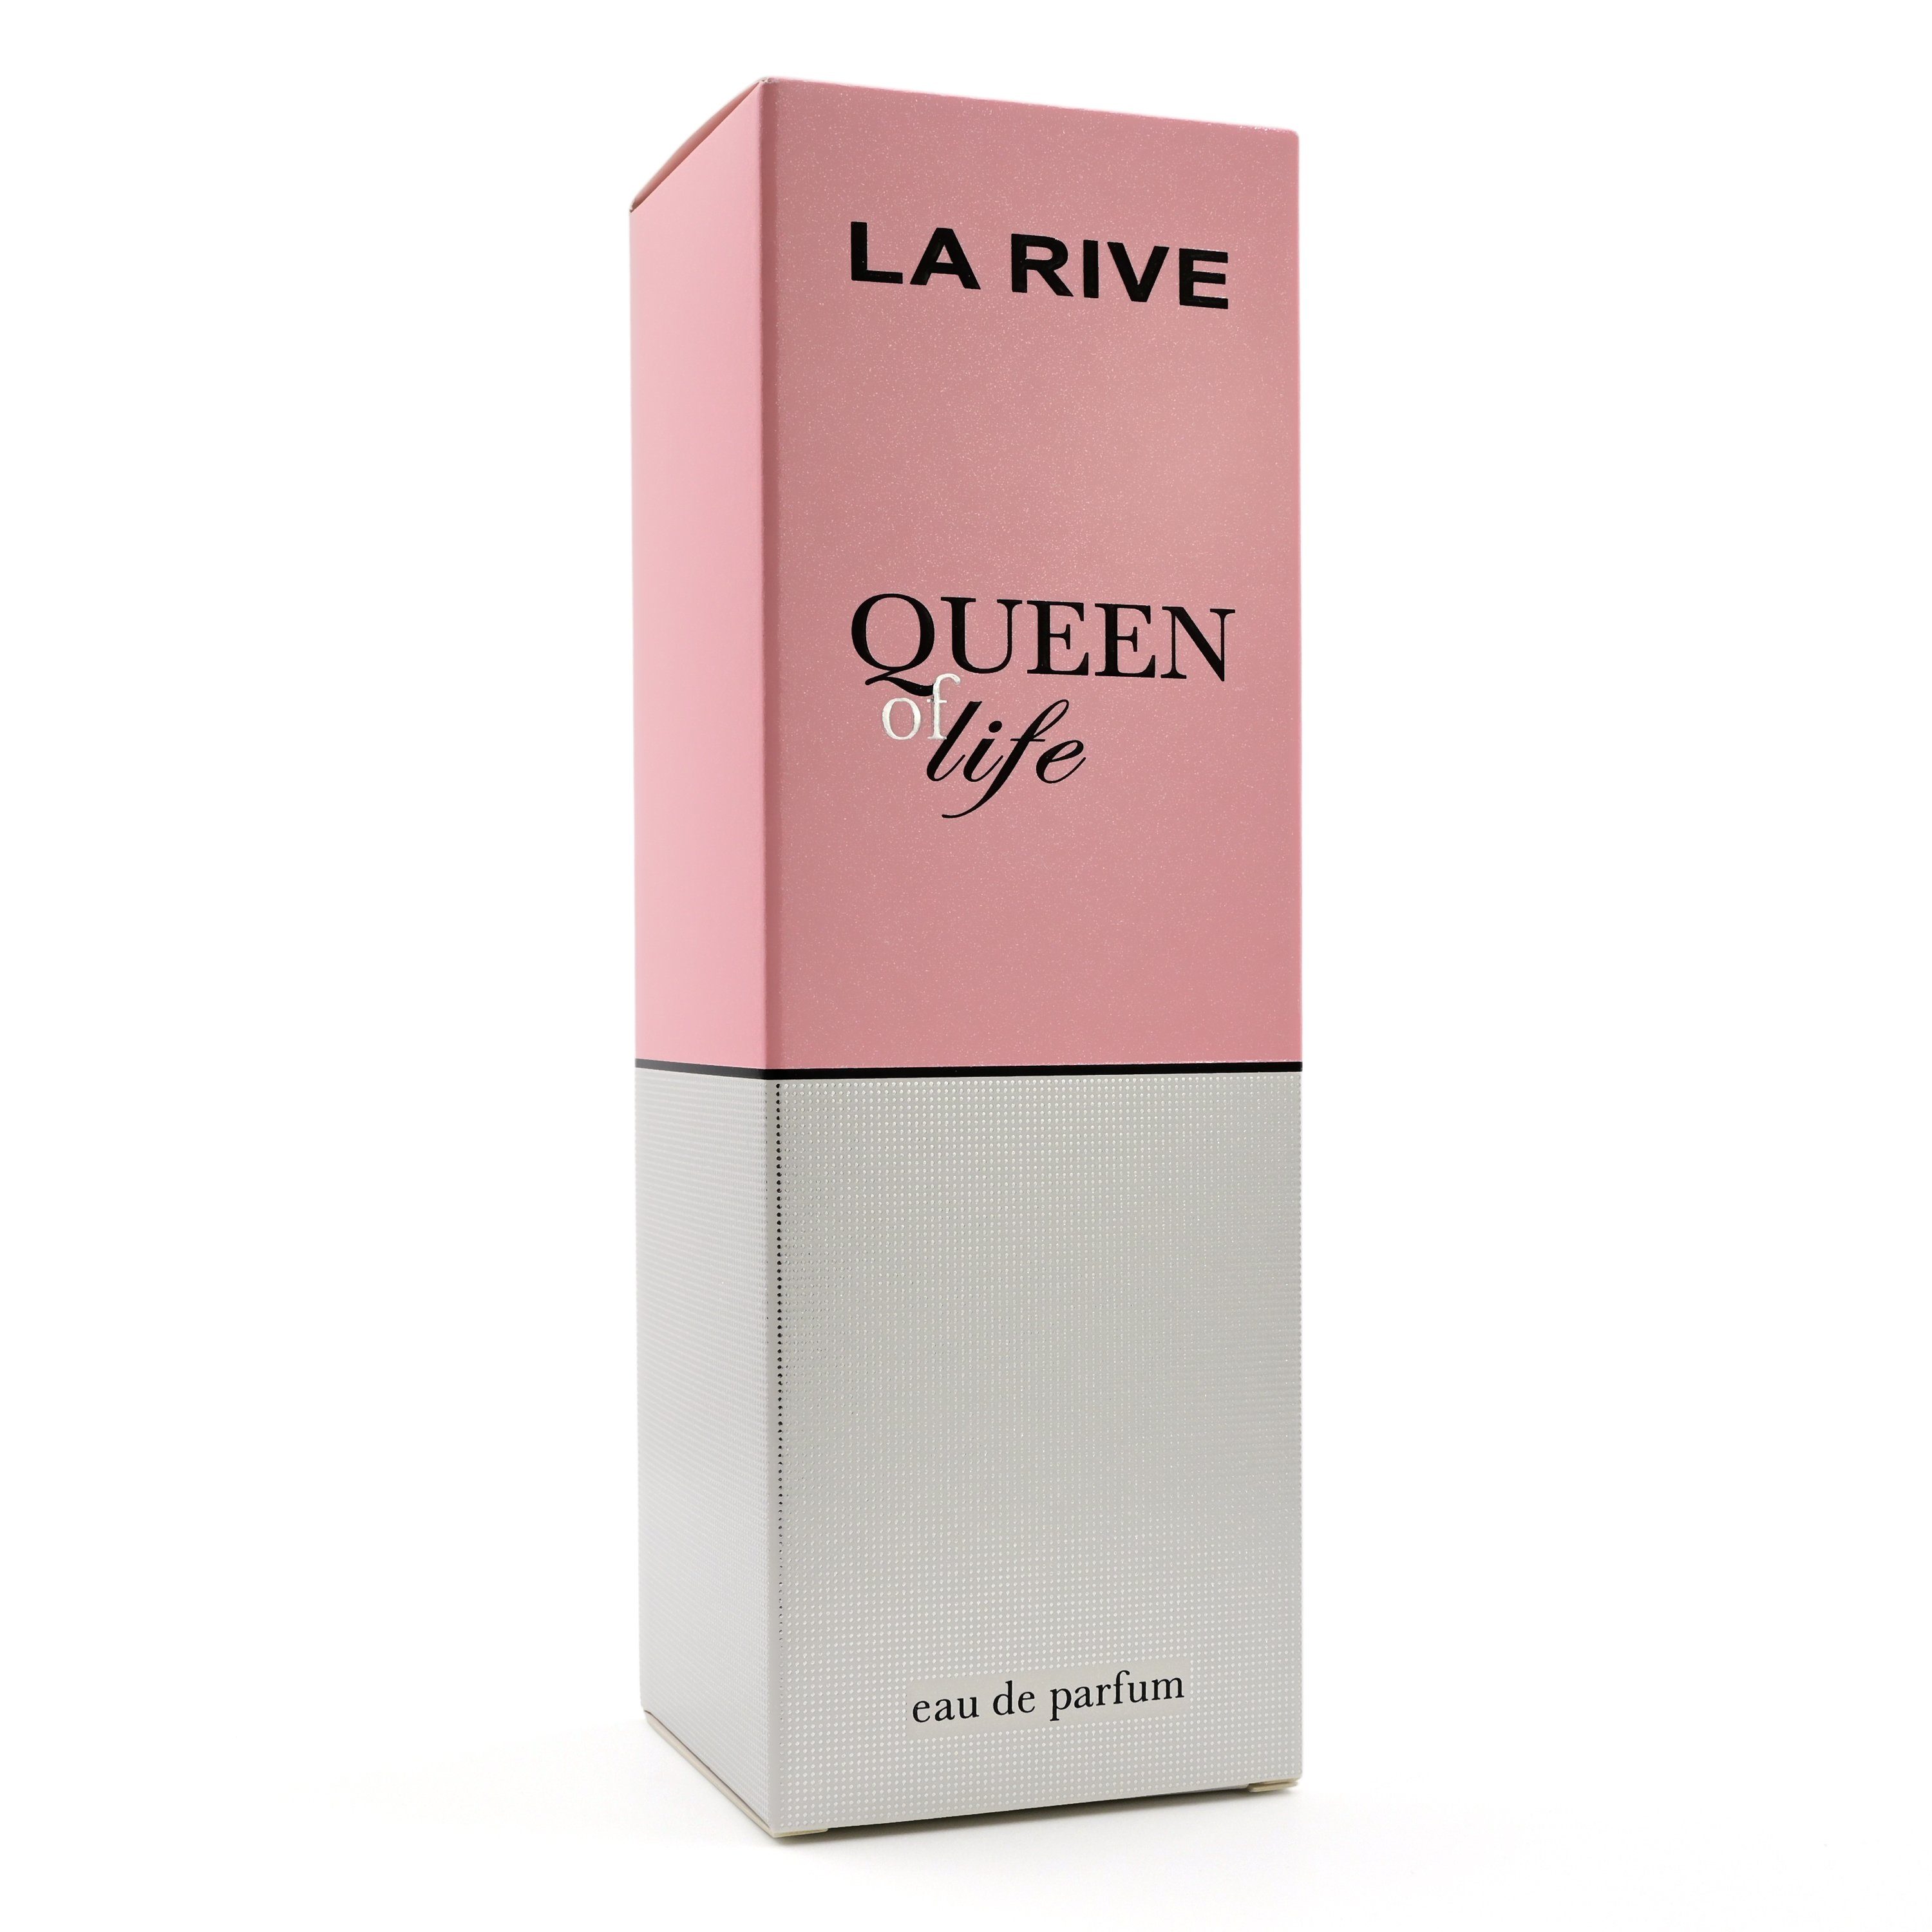 Rive Eau - RIVE de ml Life LA Queen Eau Parfum La Parfum de of 75 -